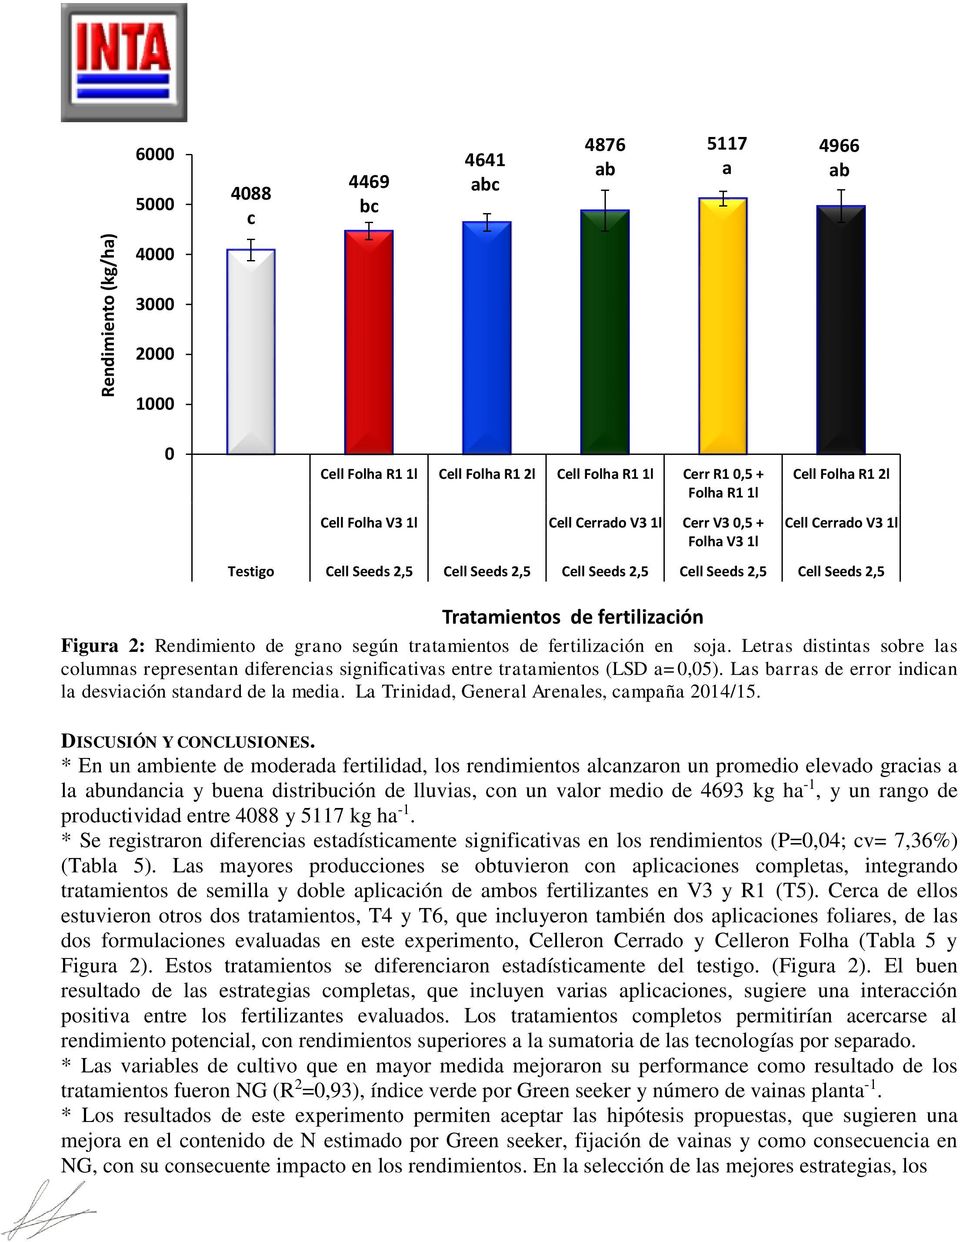 Rendimiento de grano según tratamientos de fertilización en soja. Letras distintas sobre las columnas representan diferencias significativas entre tratamientos (LSD a=0,05).